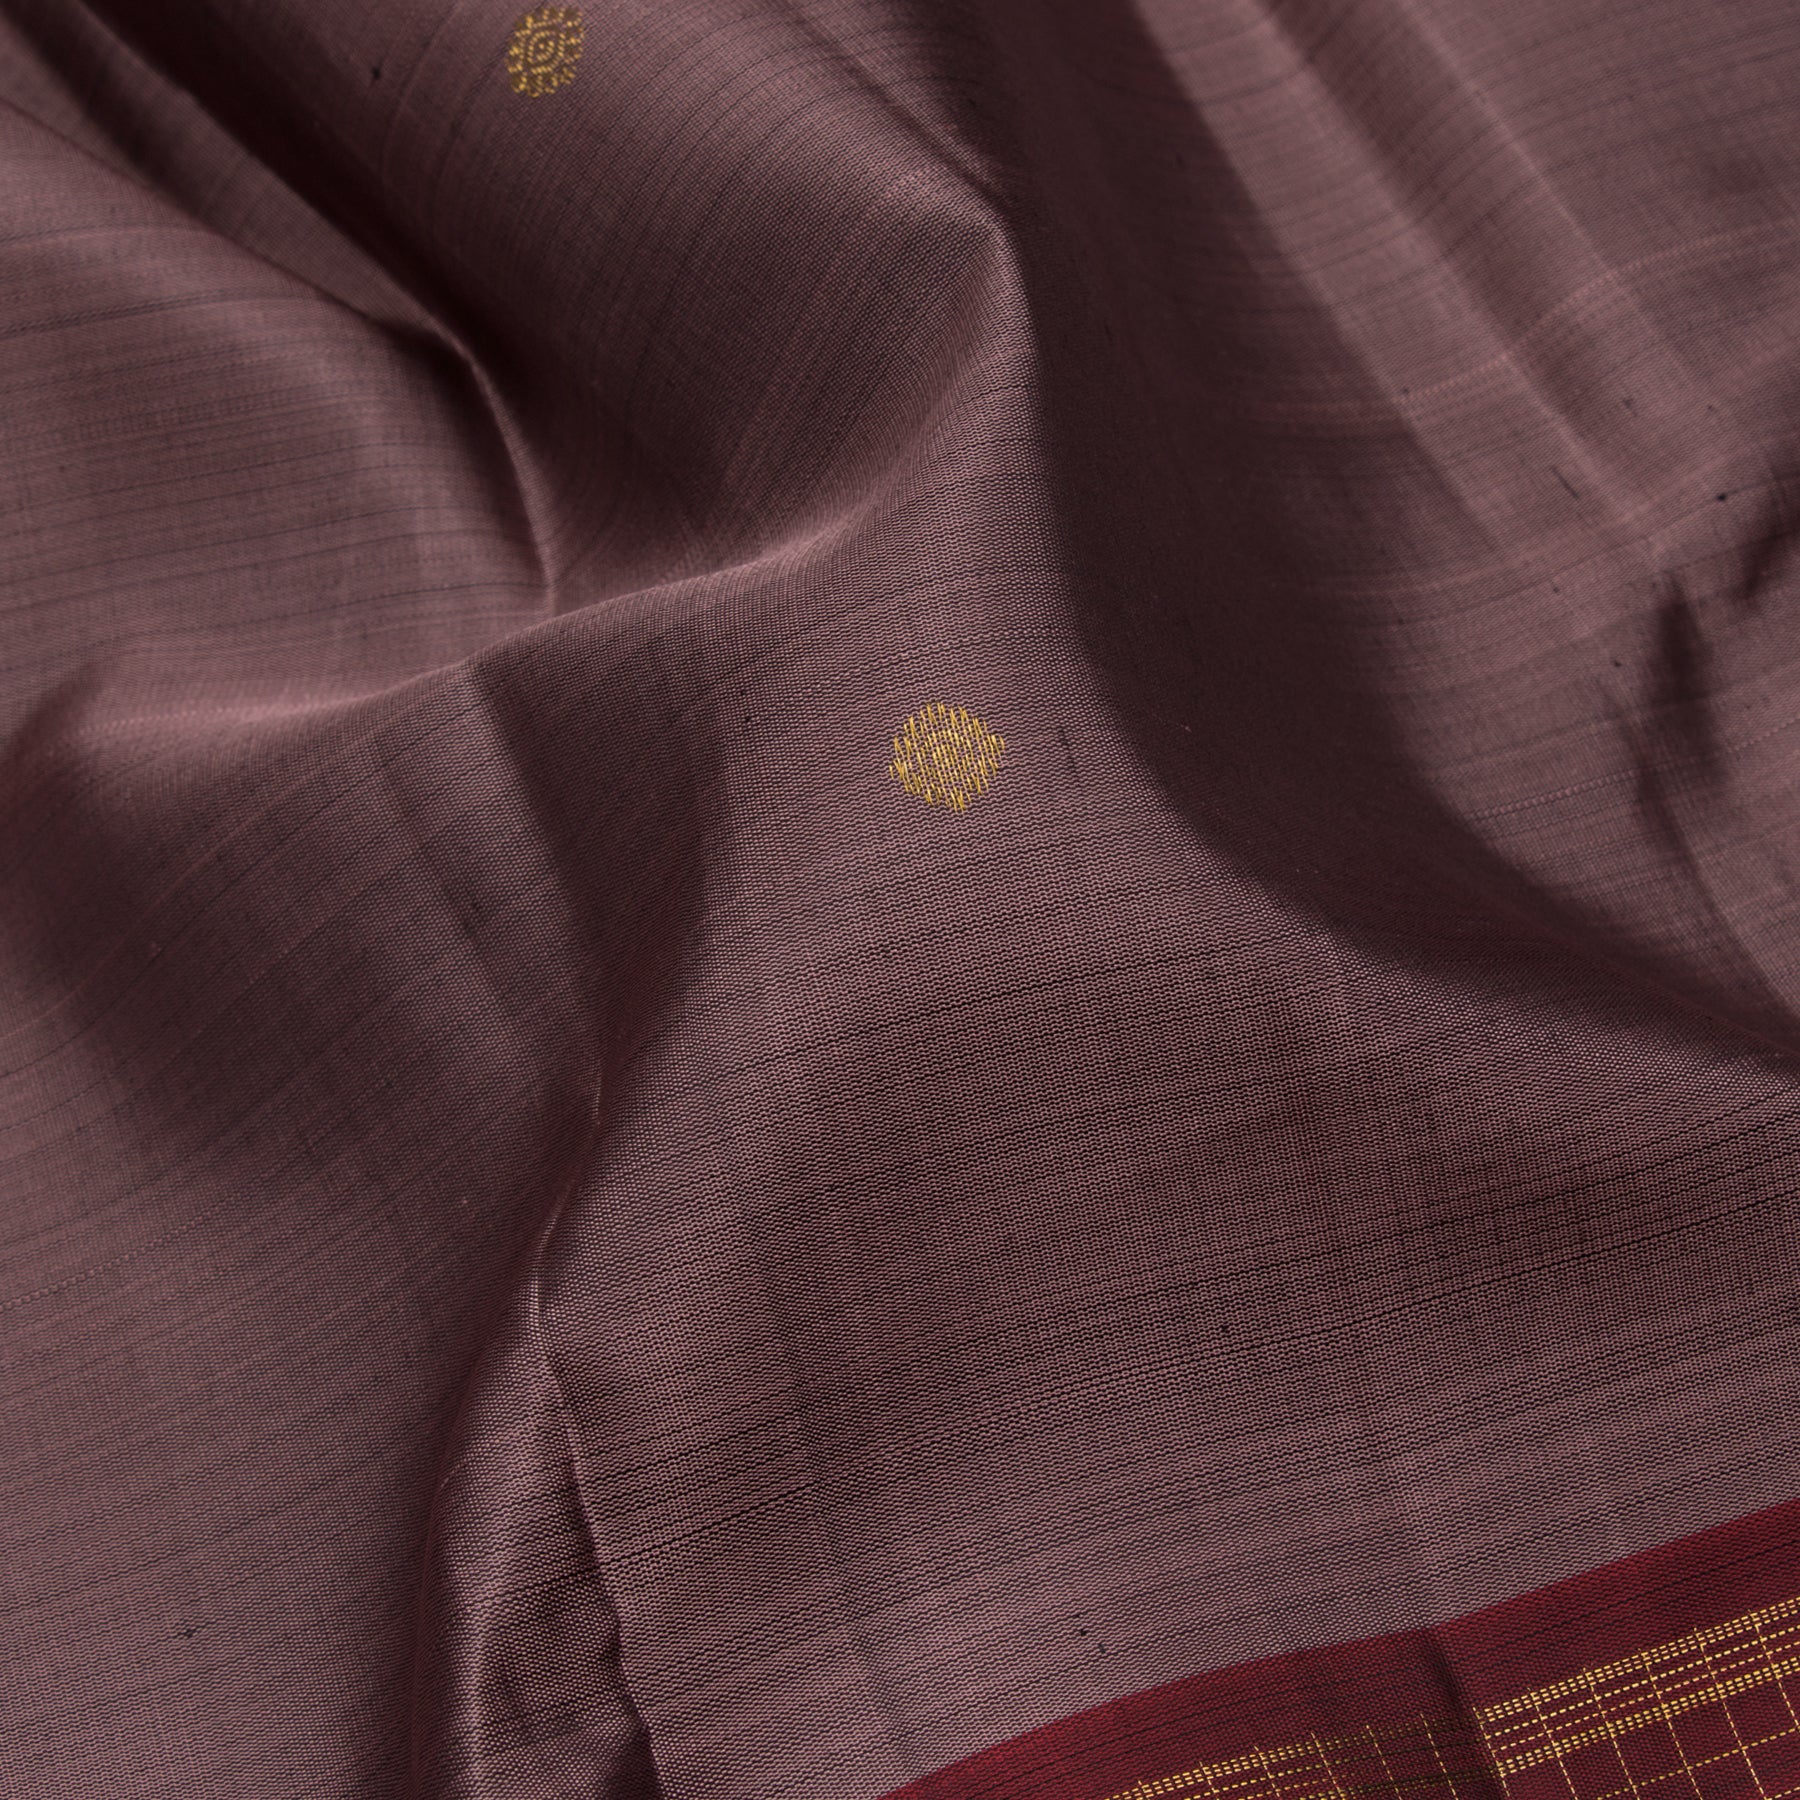 Kanakavalli Kanjivaram Silk Sari 23-595-HS001-12774 - Fabric View